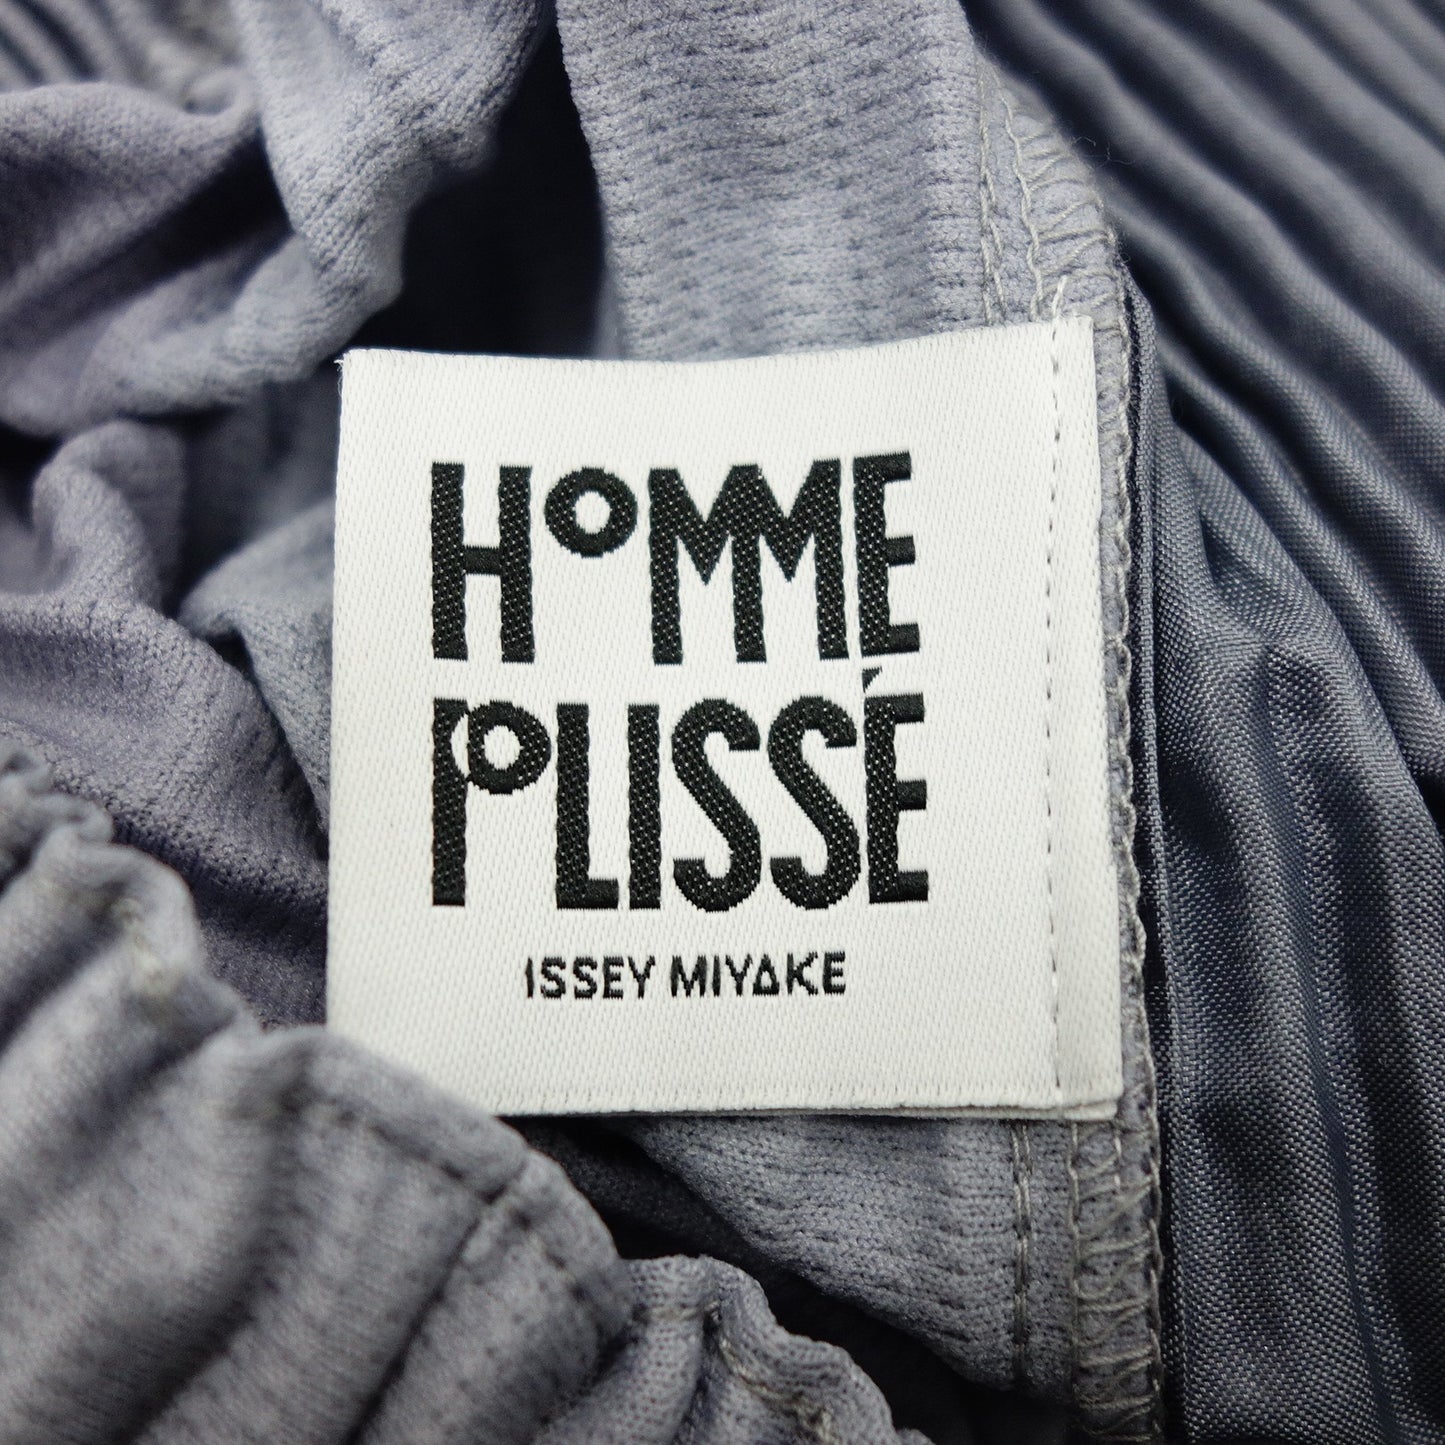 状况良好◆Issey Miyake Homme Plisse 褶裥短裤 HP91JF126 男式 3 码灰色 ISSEY MIYAKE HOMME PLISSE [AFB30] 